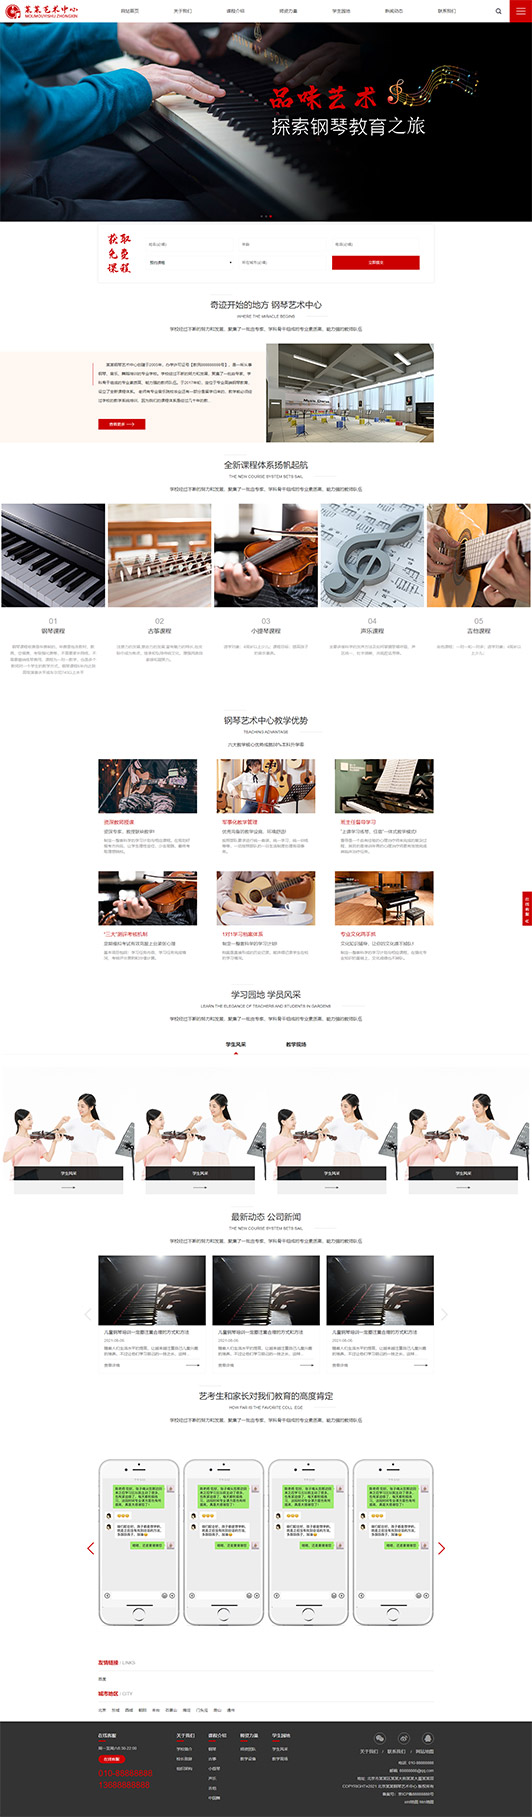 酒泉钢琴艺术培训公司响应式企业网站